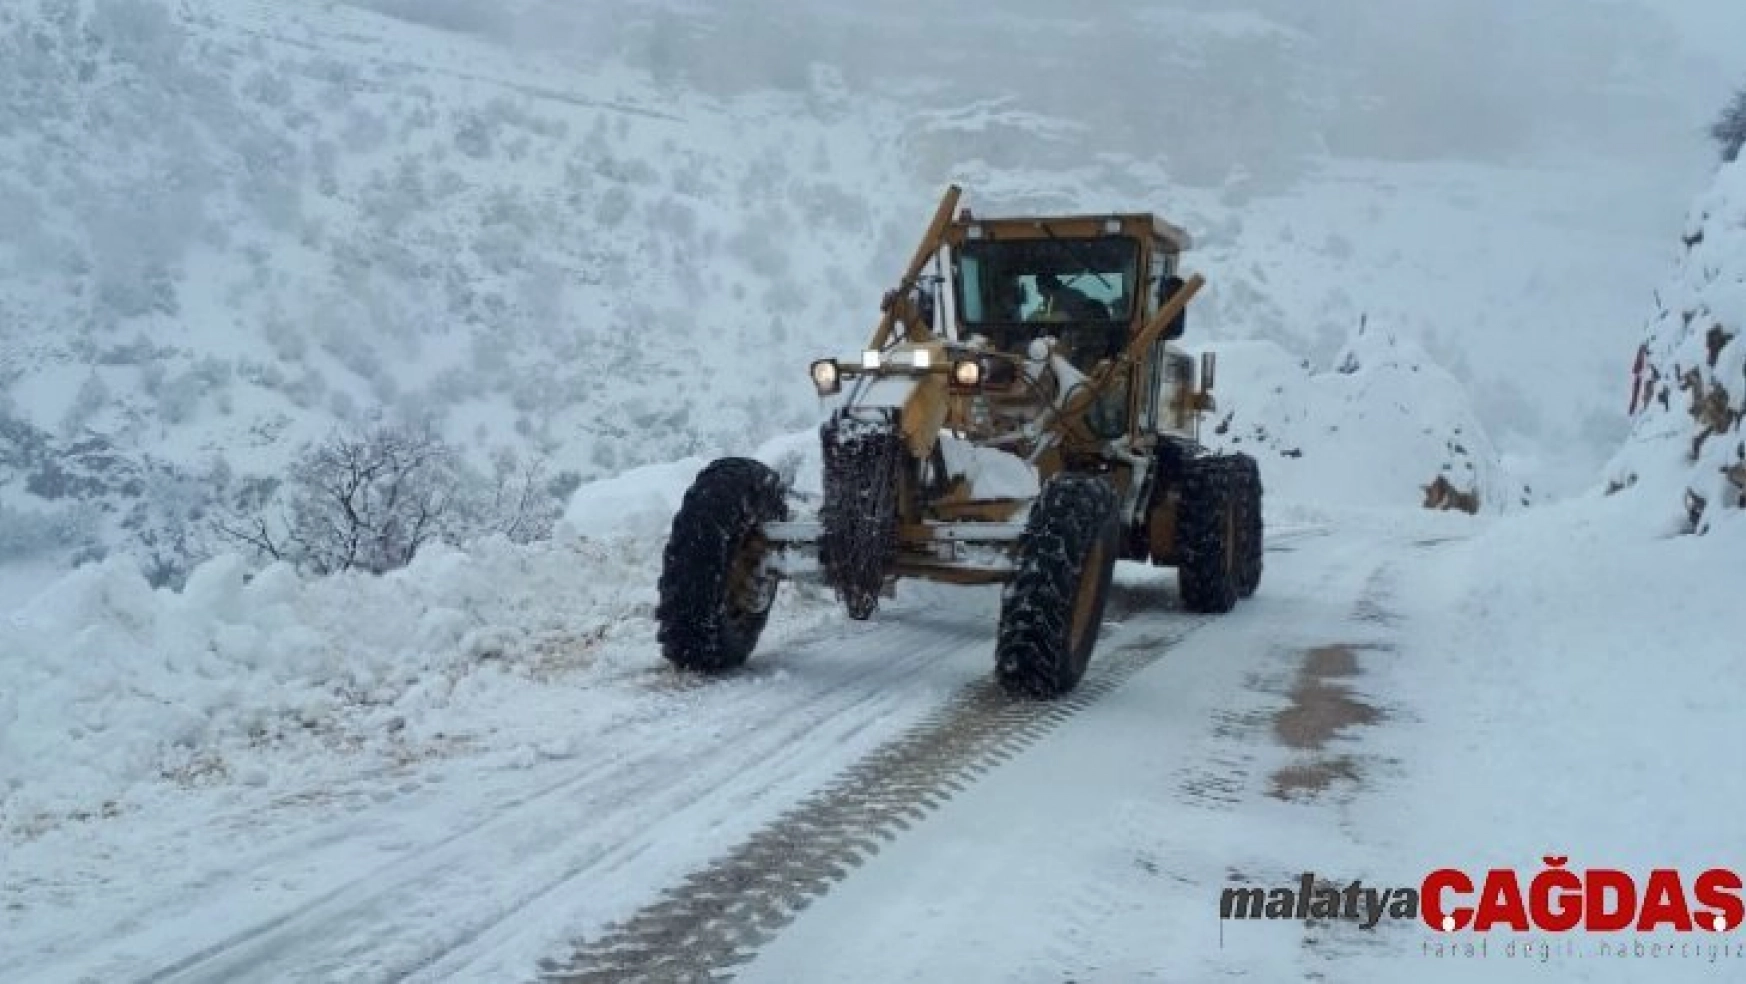 Mersin'in yüksek kesimlerinde karla mücadele sürüyor